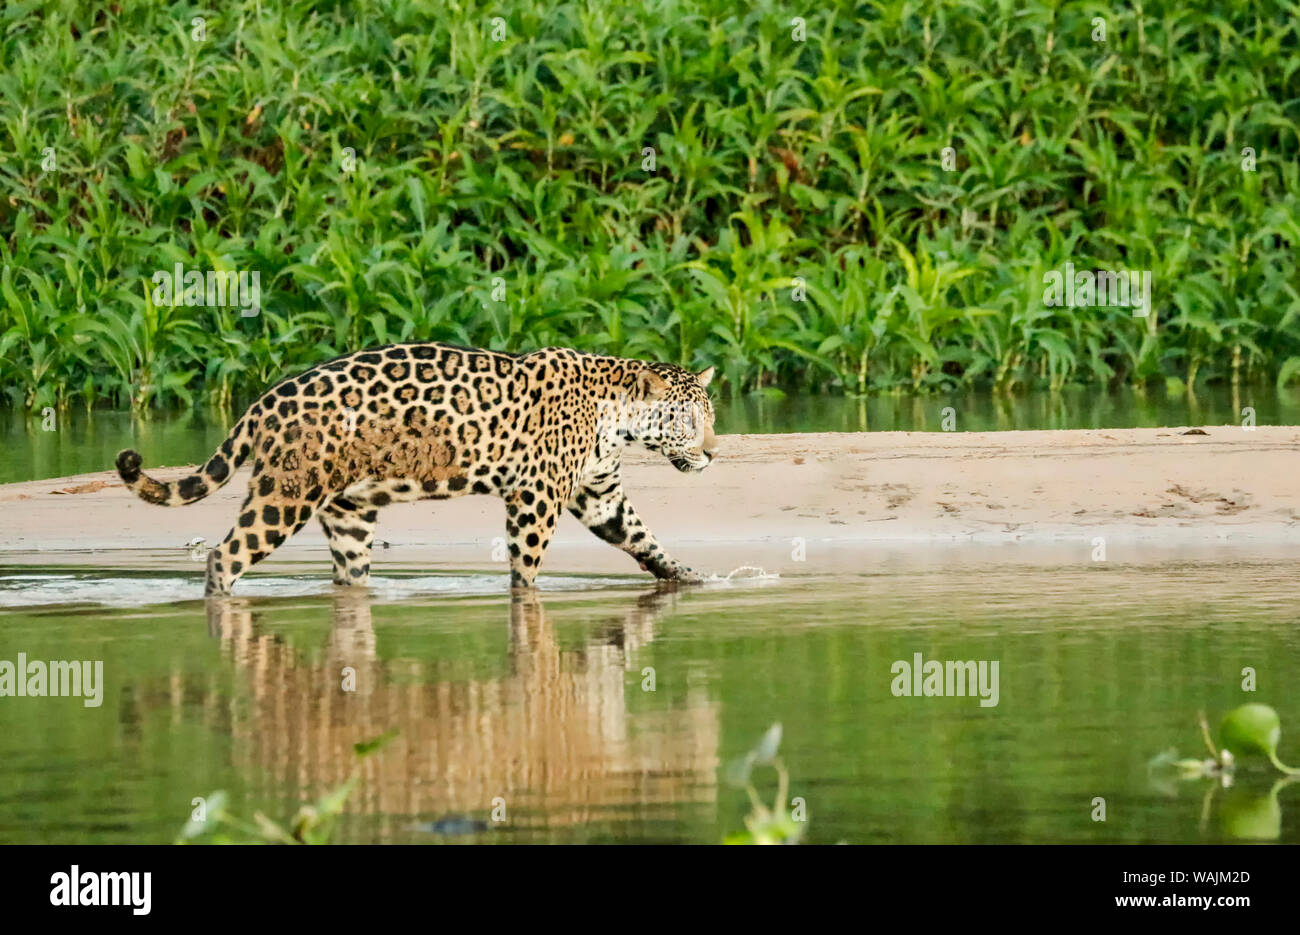 Pantanal, Mato Grosso, Brasilien. Jaguar das Waten im seichten Wasser, wie es zwischen den Sandbänken auf der Cuiaba Fluss überquert. Gemeinsame Wasserhyazinthen erstellen Dicke grüne Laub entlang der Sandbank. Stockfoto